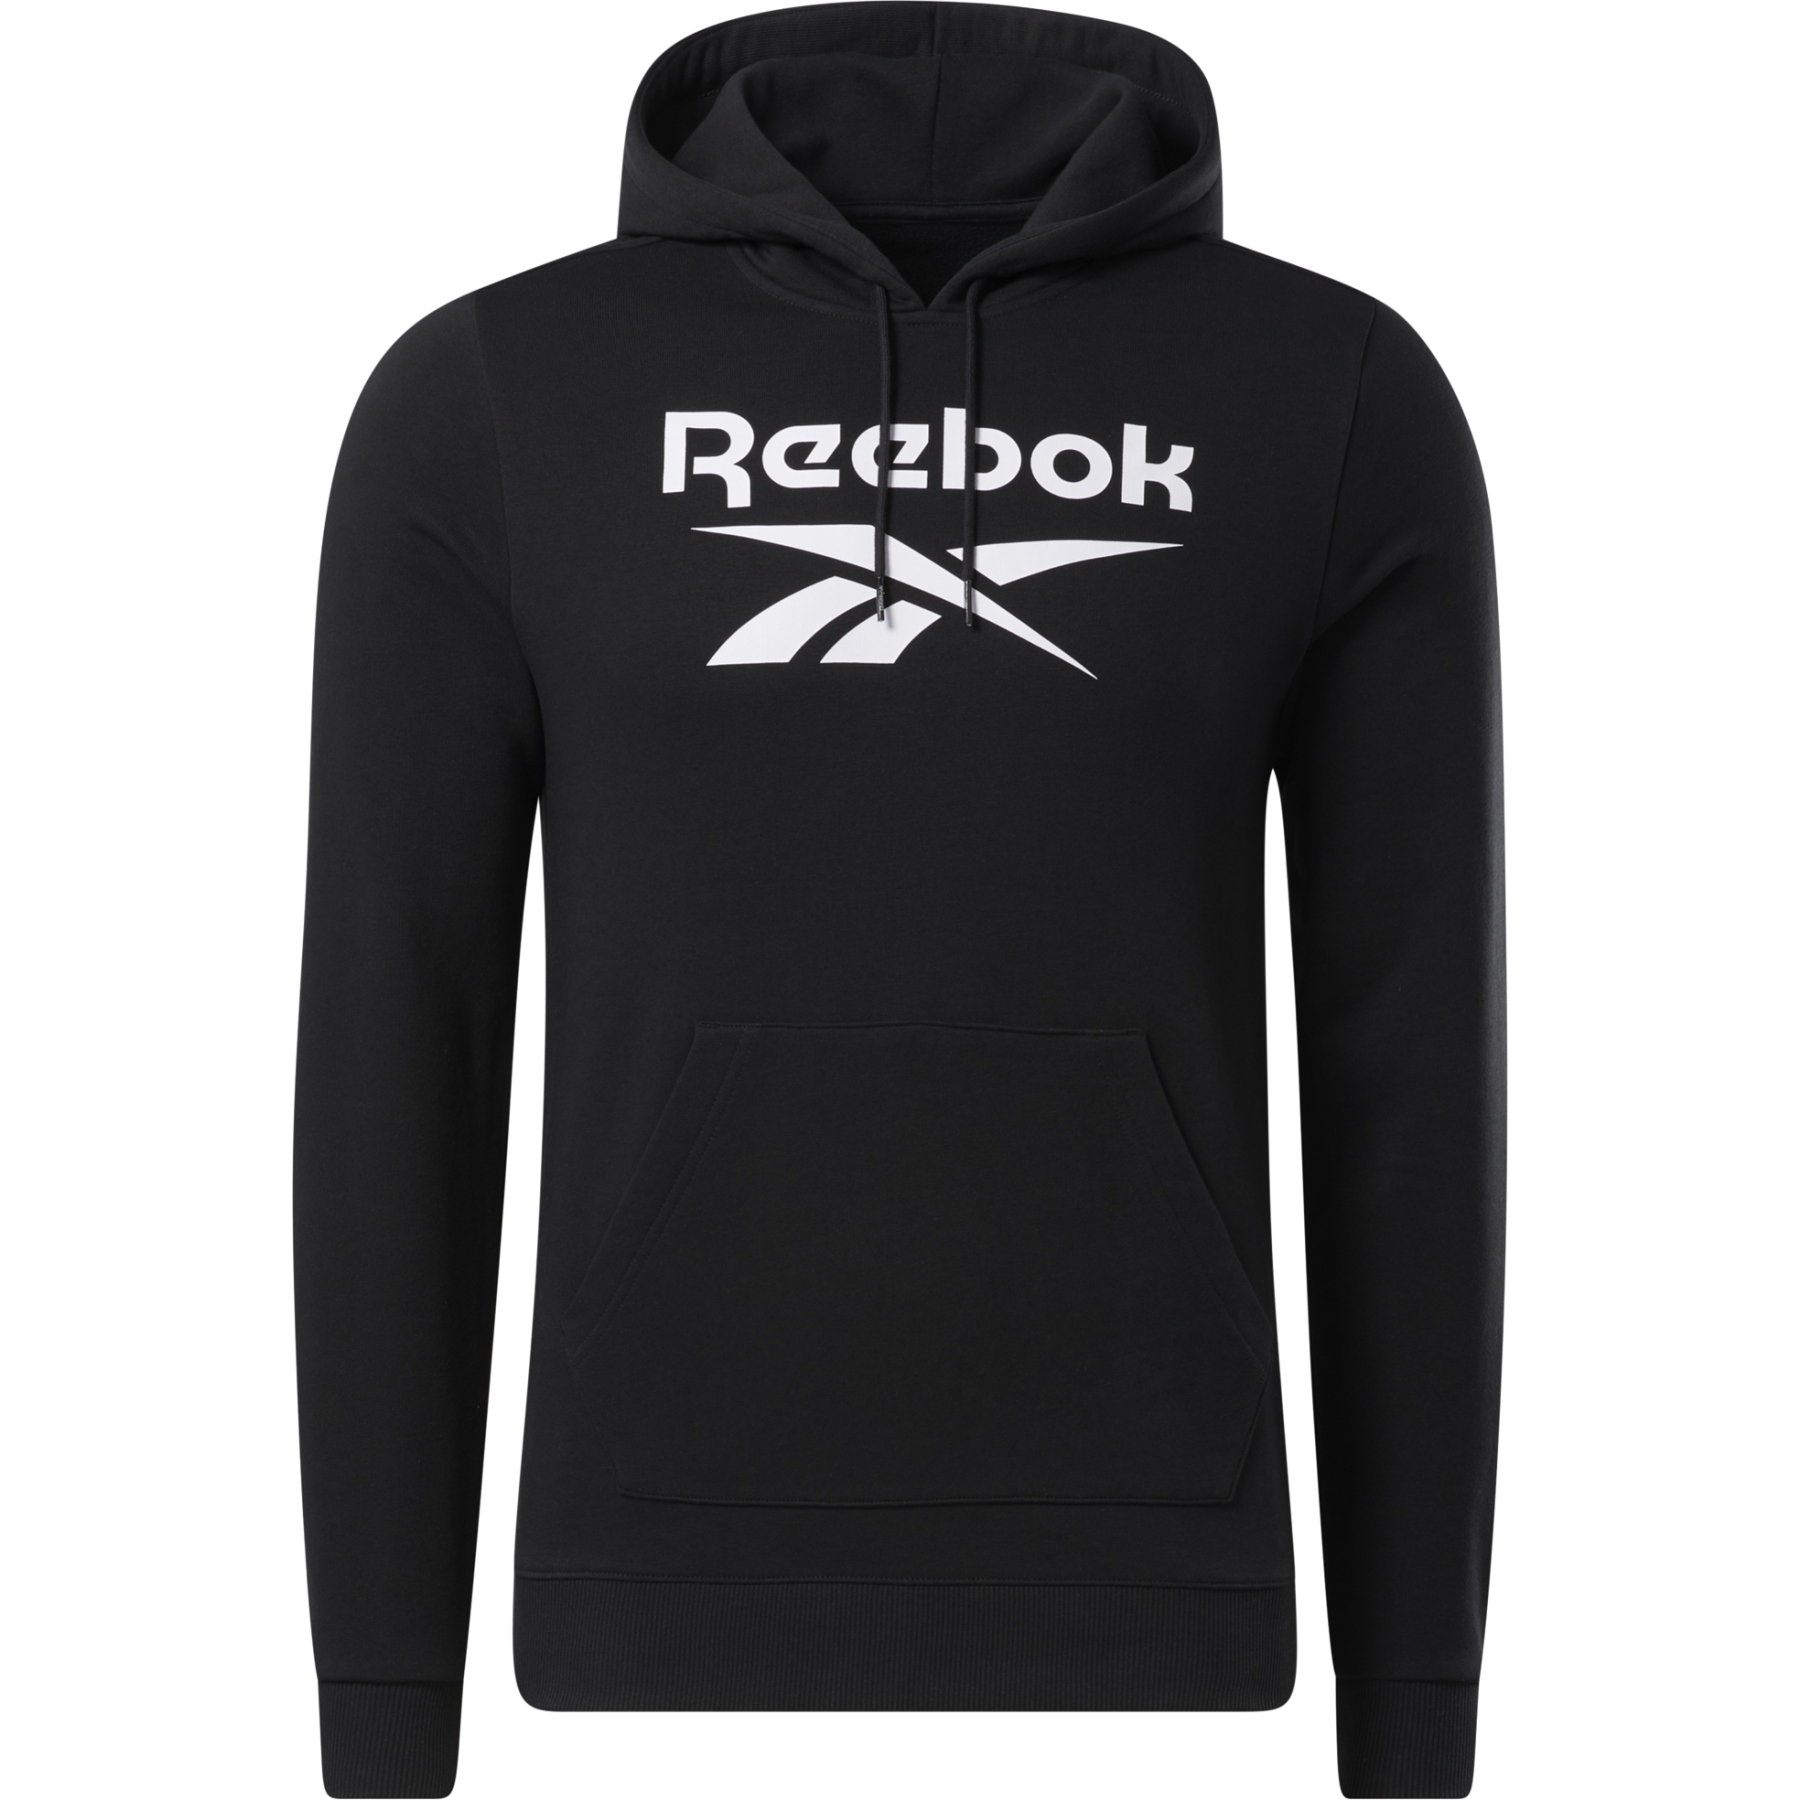 Produktbild von Reebok Identity Big Logo Herren French Terry Kapuzenpullover - schwarz